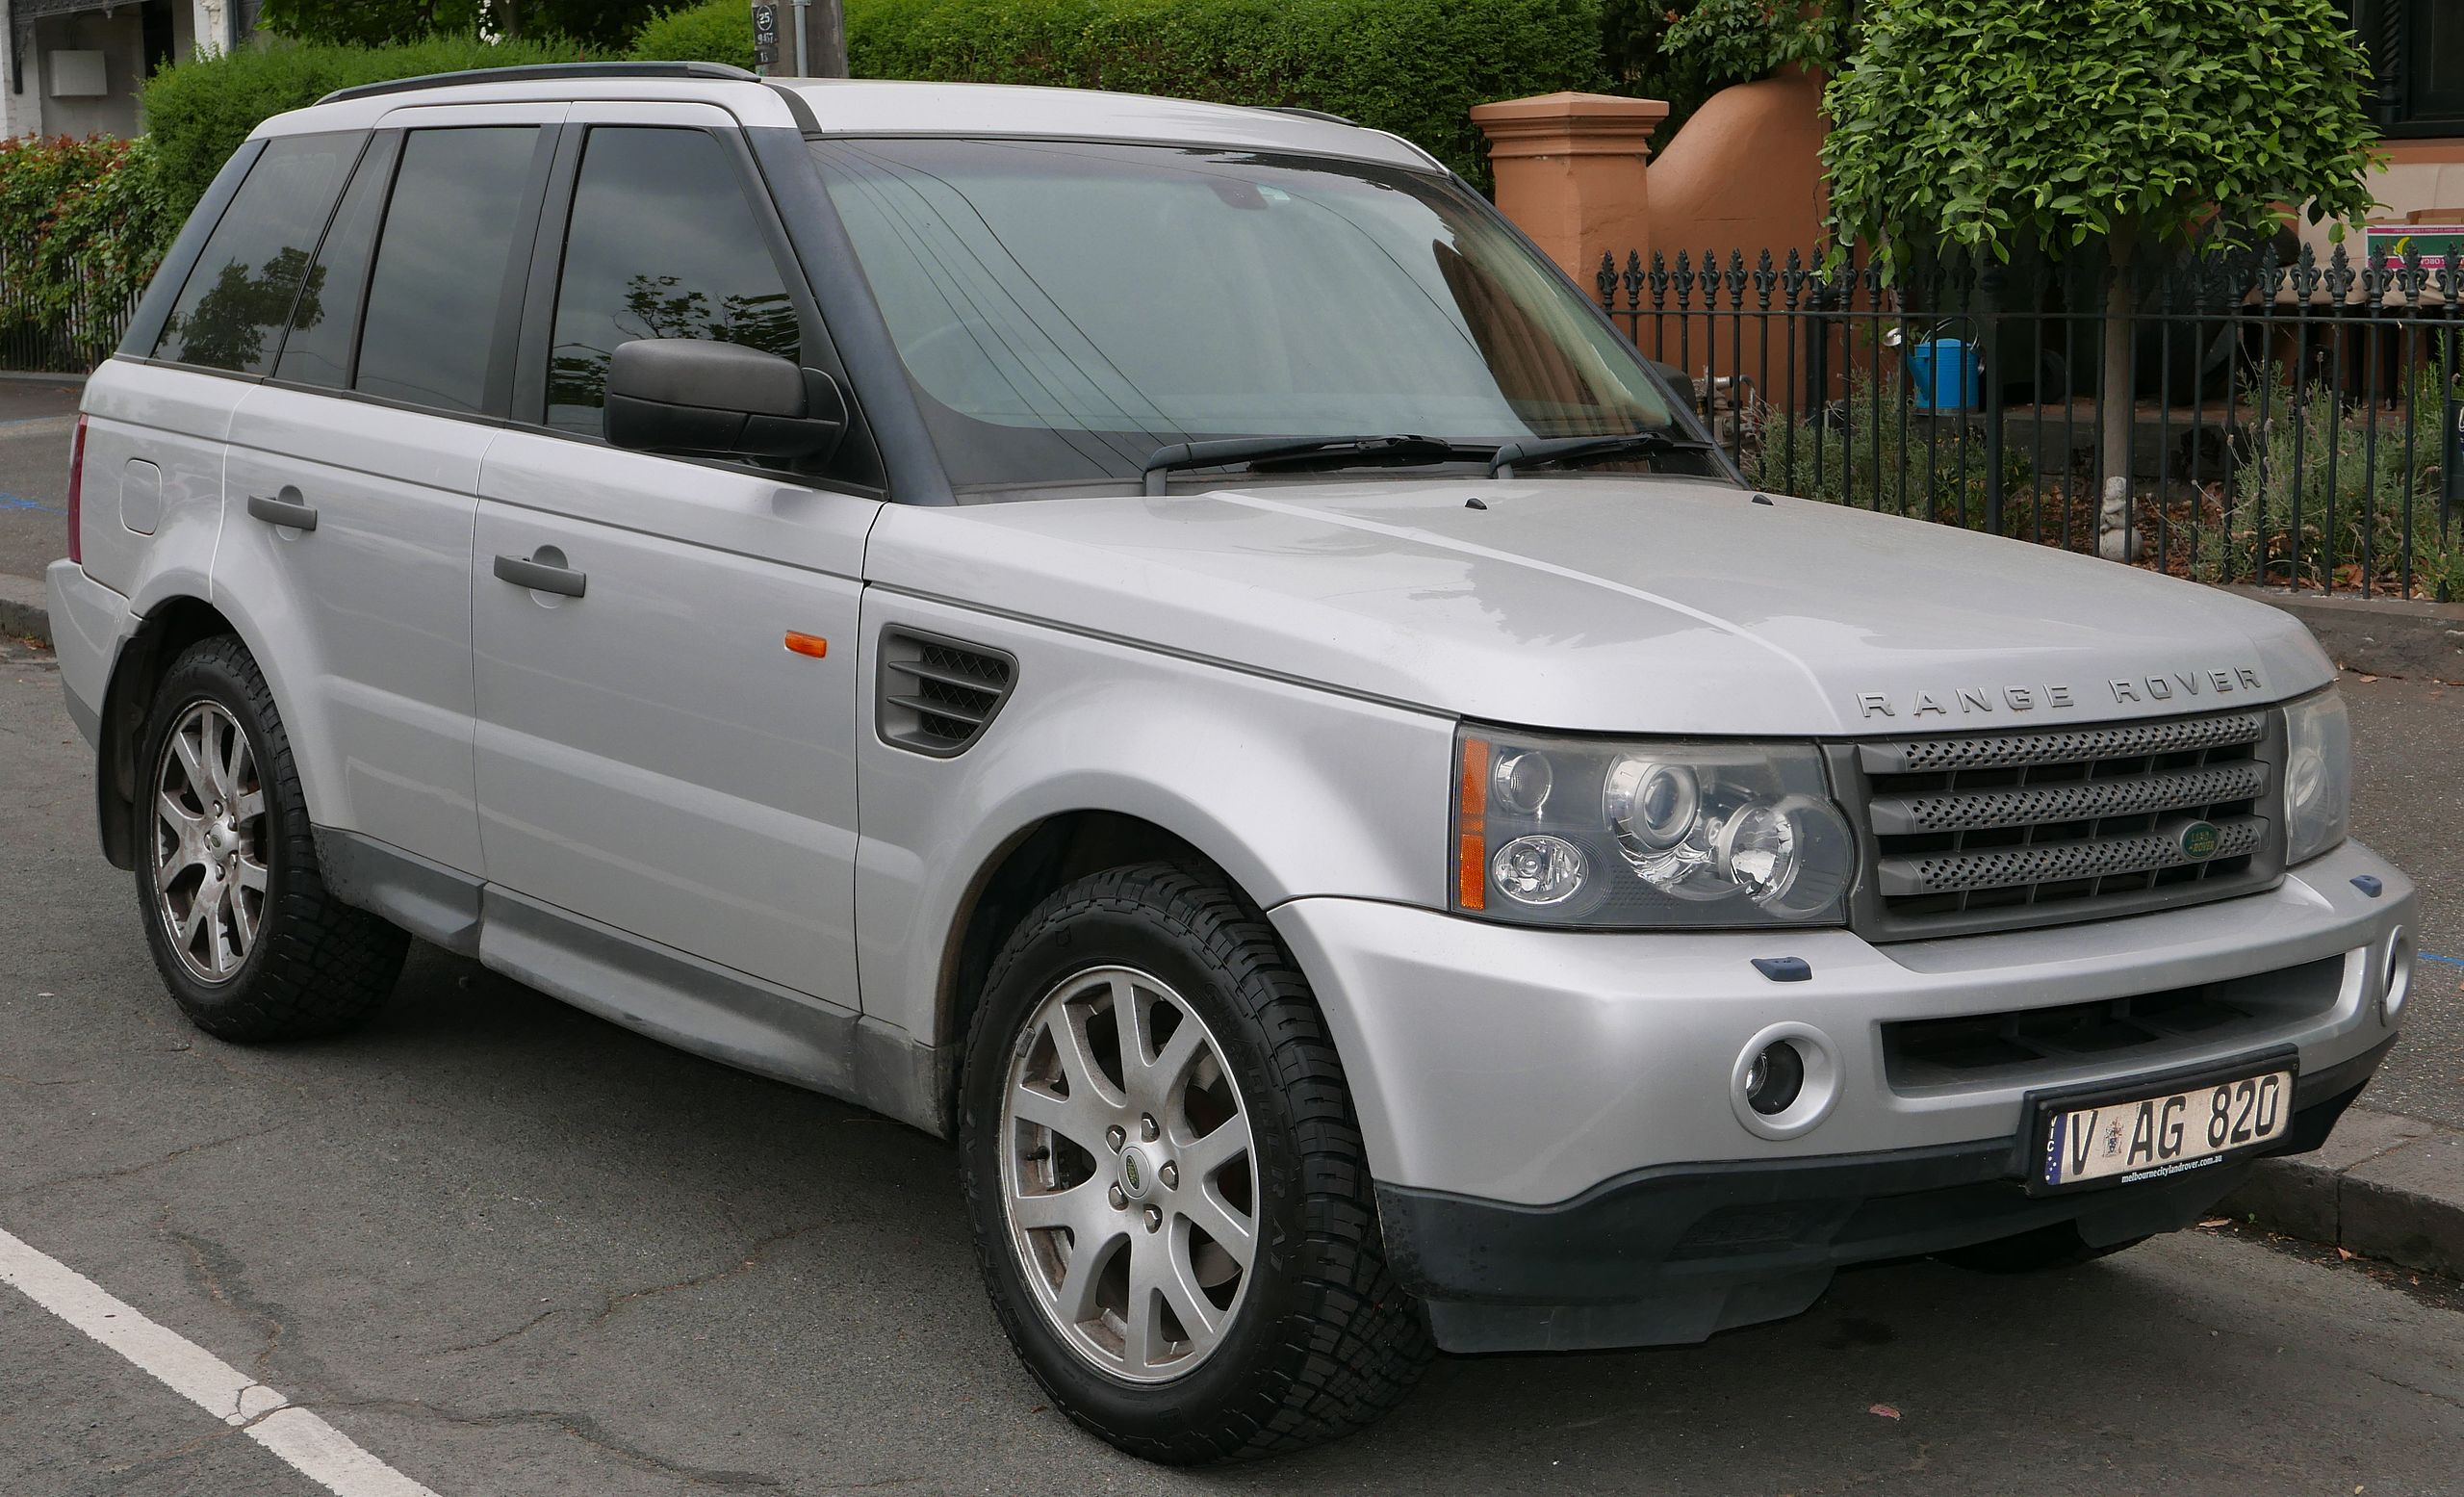 visueel Medicinaal Een bezoek aan grootouders File:2005 Land Rover Range Rover Sport (L320 MY06) TDV6 wagon (2015-12-07)  01.jpg - Wikimedia Commons